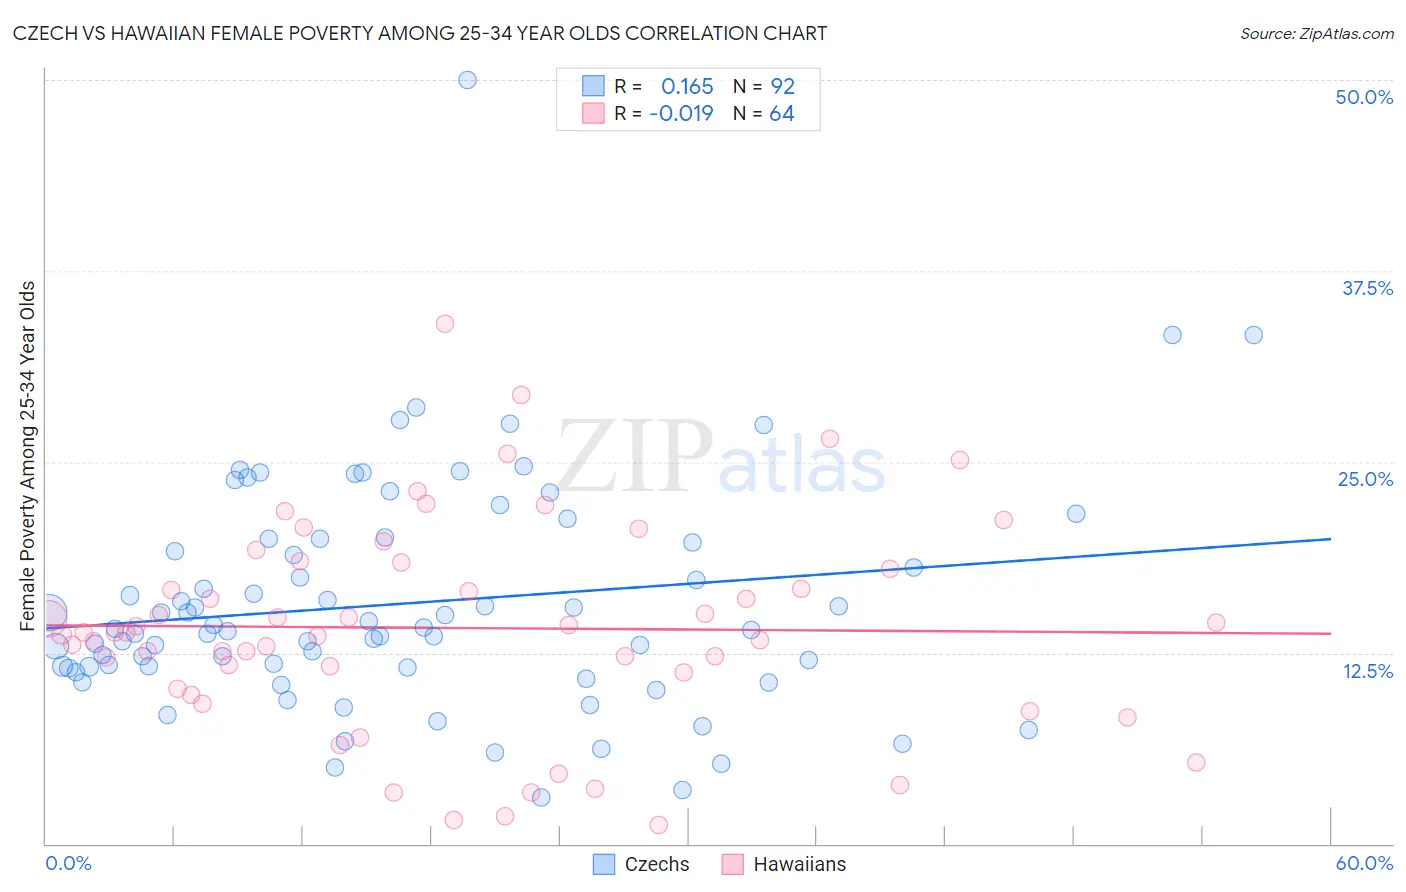 Czech vs Hawaiian Female Poverty Among 25-34 Year Olds